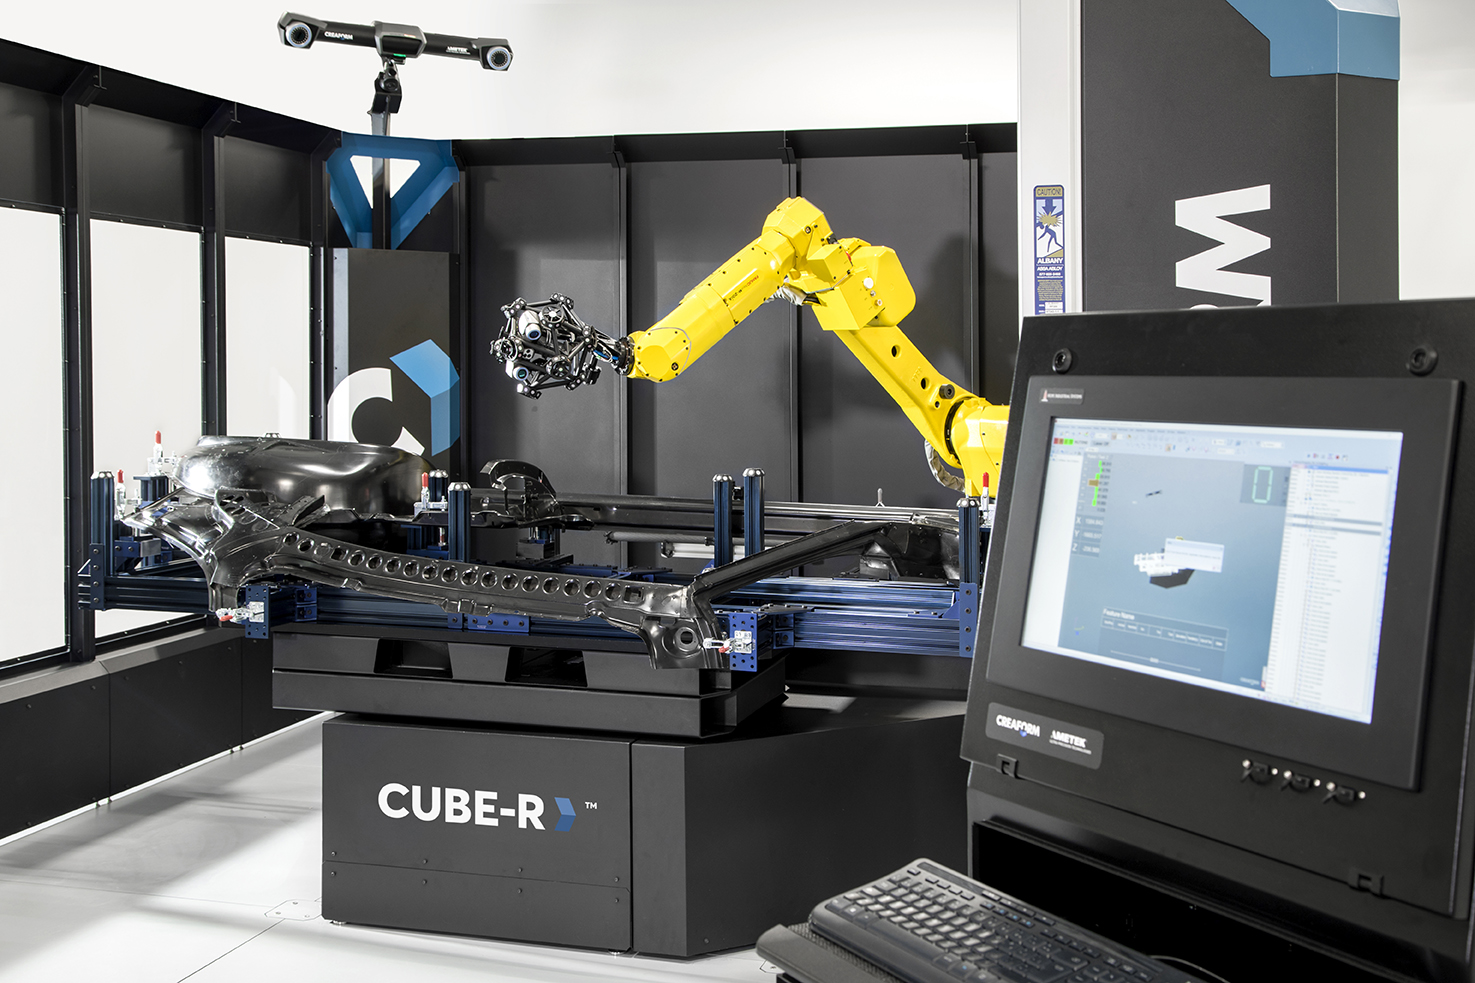 El CUBE-R de Creaform es una maquina llave en mano precisa para el escaneado 3D.